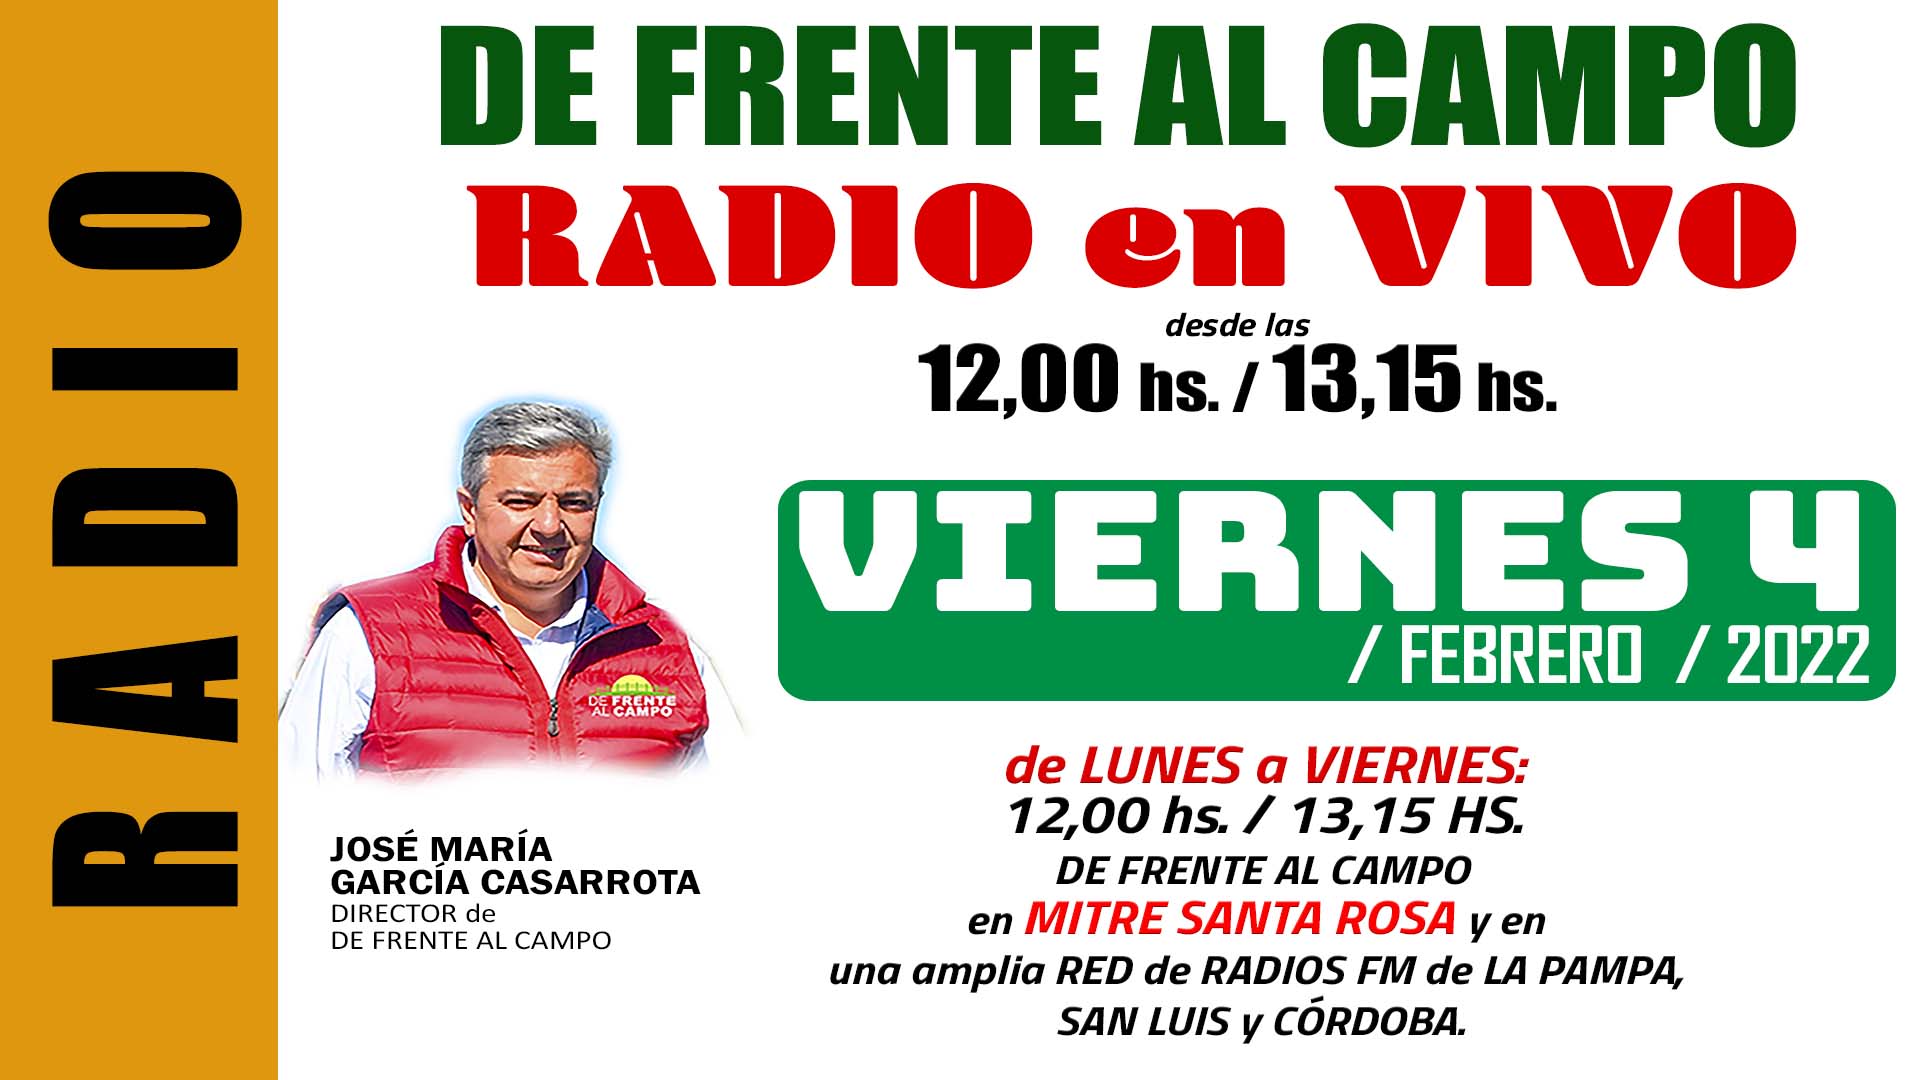 DFC en MITRE SANTA ROSA -FM 100,9 – VIERNES 4 / FEBRERO / 2022-.